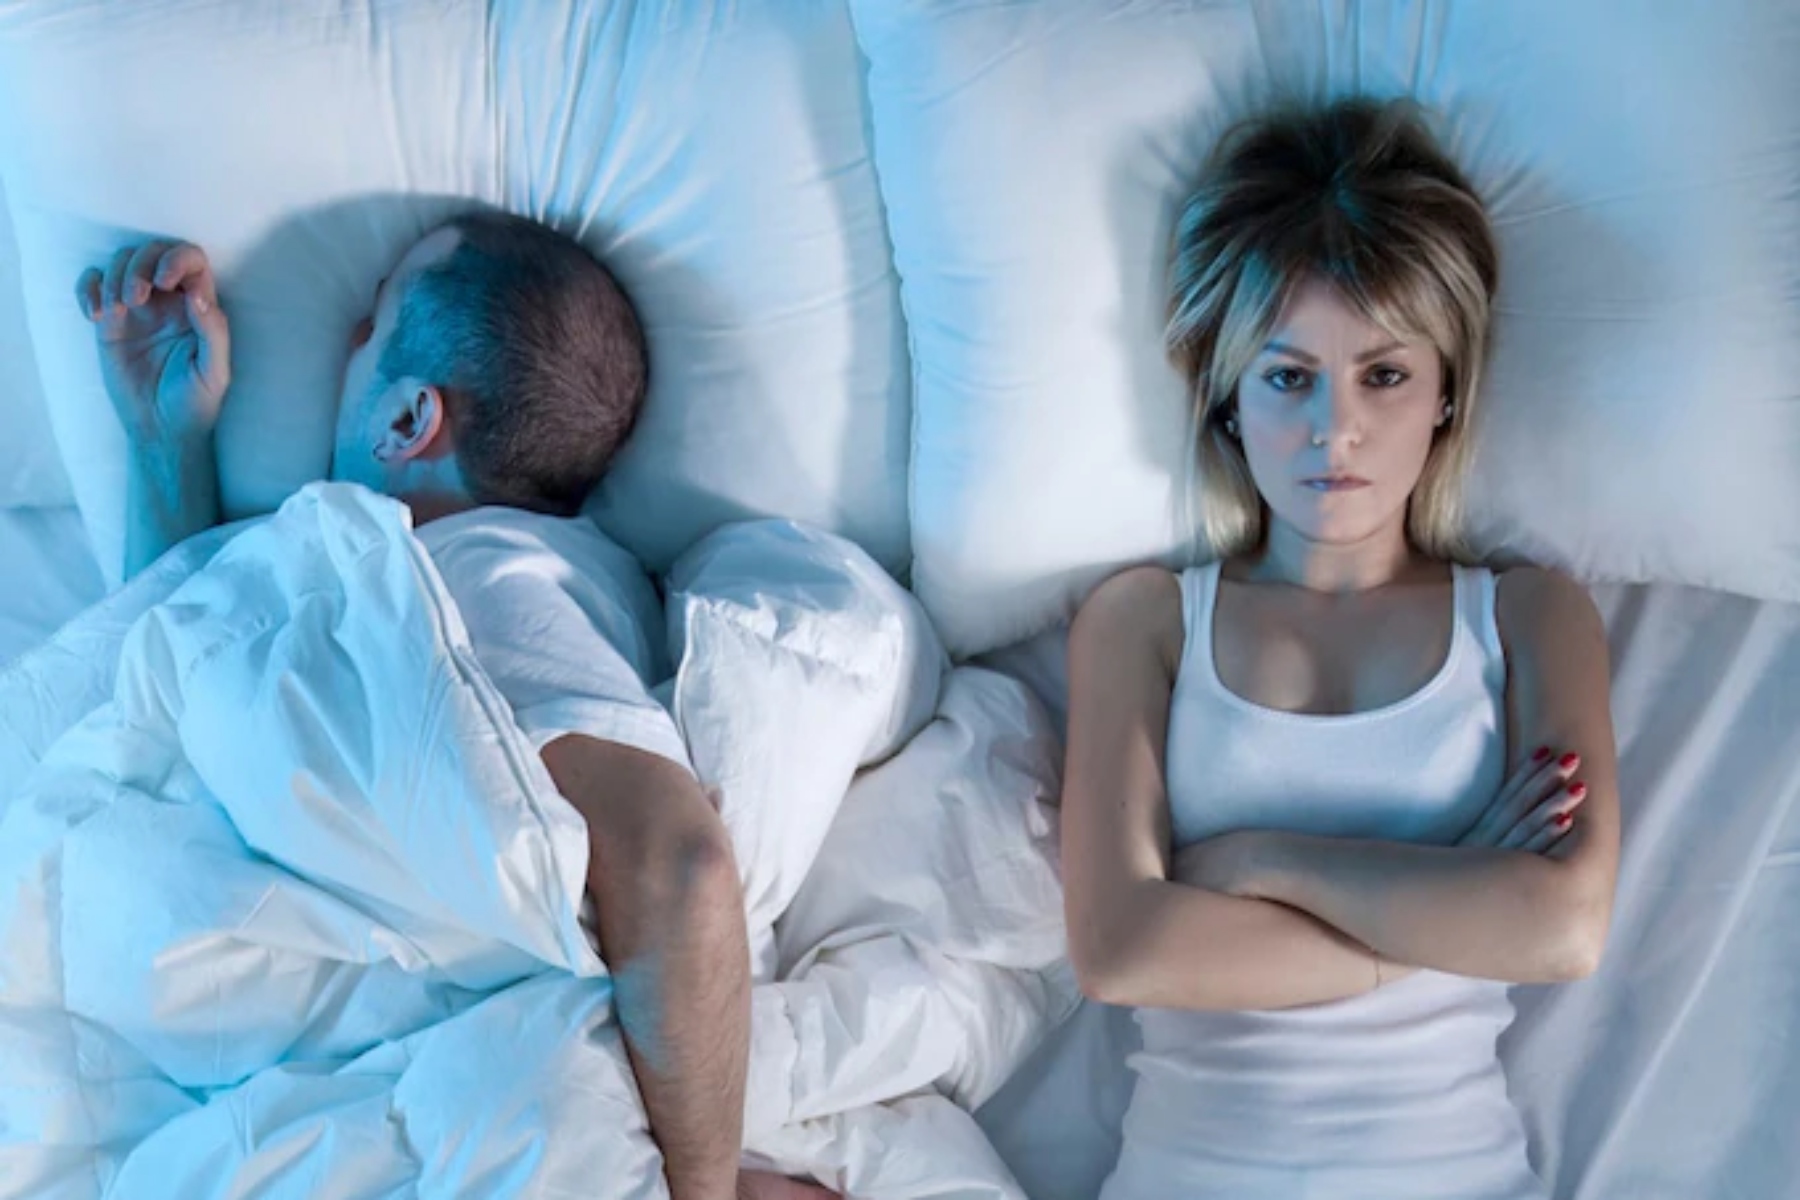 Σεξ ύπνος: Γιατί οι άνδρες κοιμούνται αμέσως μετά το σεξ;